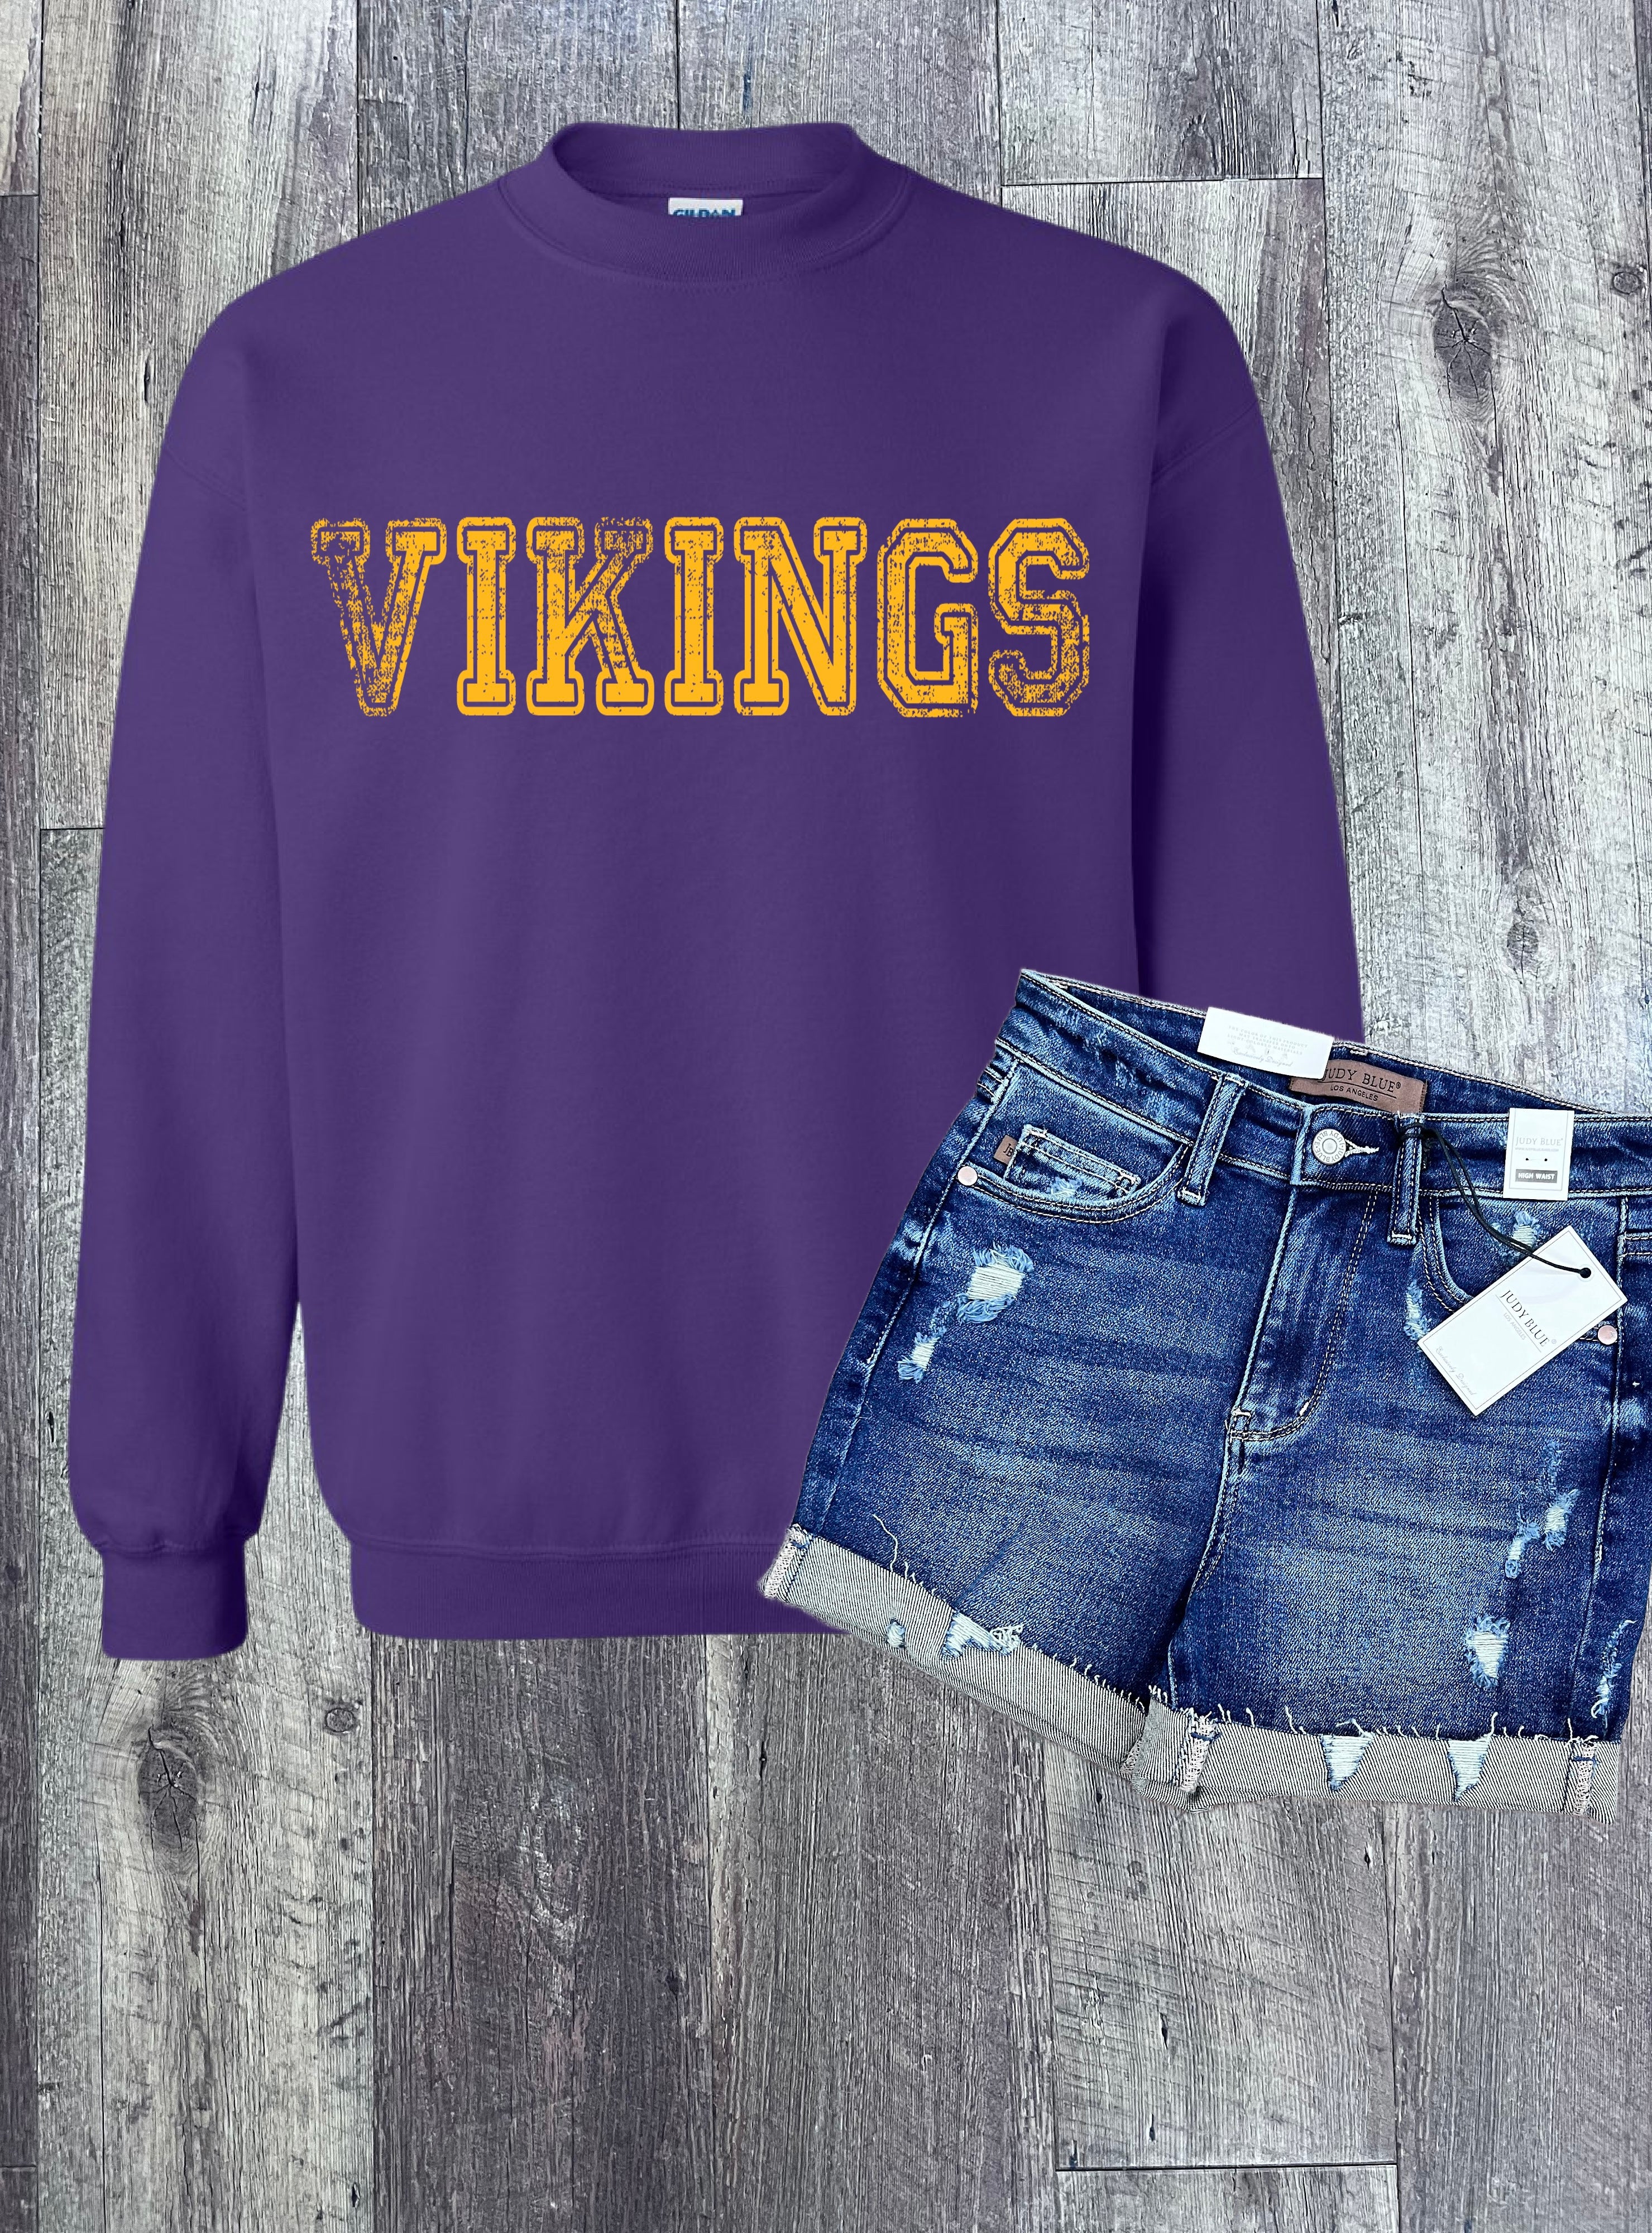 Vintage Vikings Hoodie, Pullover, Tee, or Tank